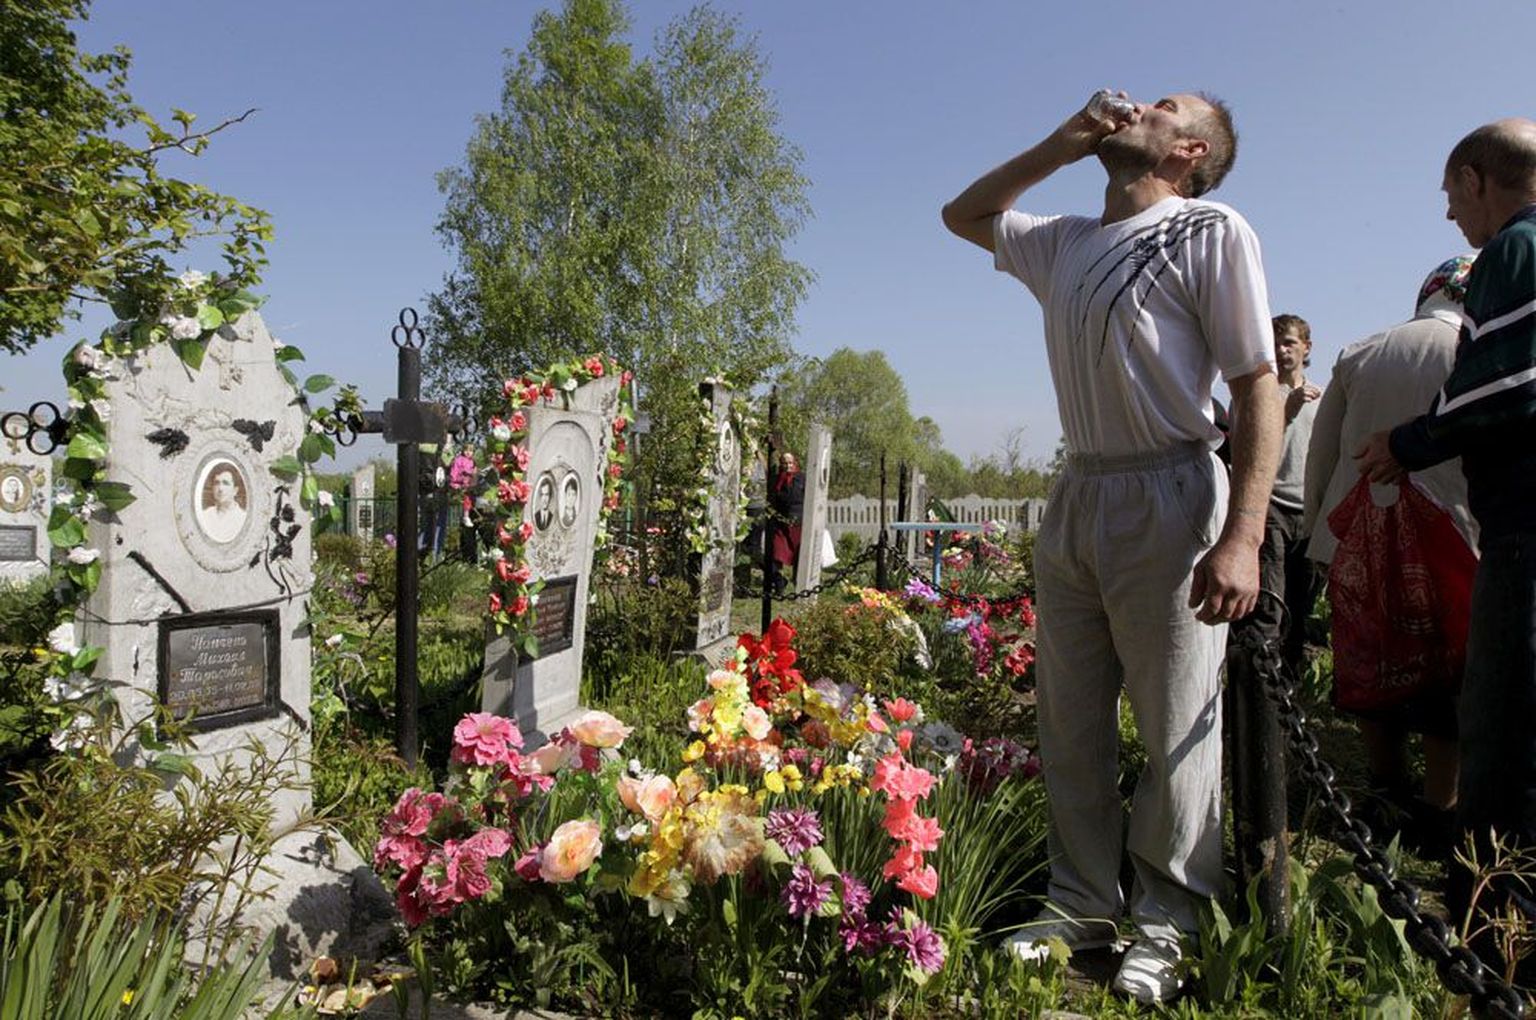 Pildil tähistab Valgevene mees ülestõusmispüha Pogosti küla surnuaial vana kombe kohaselt topsi viinaga.